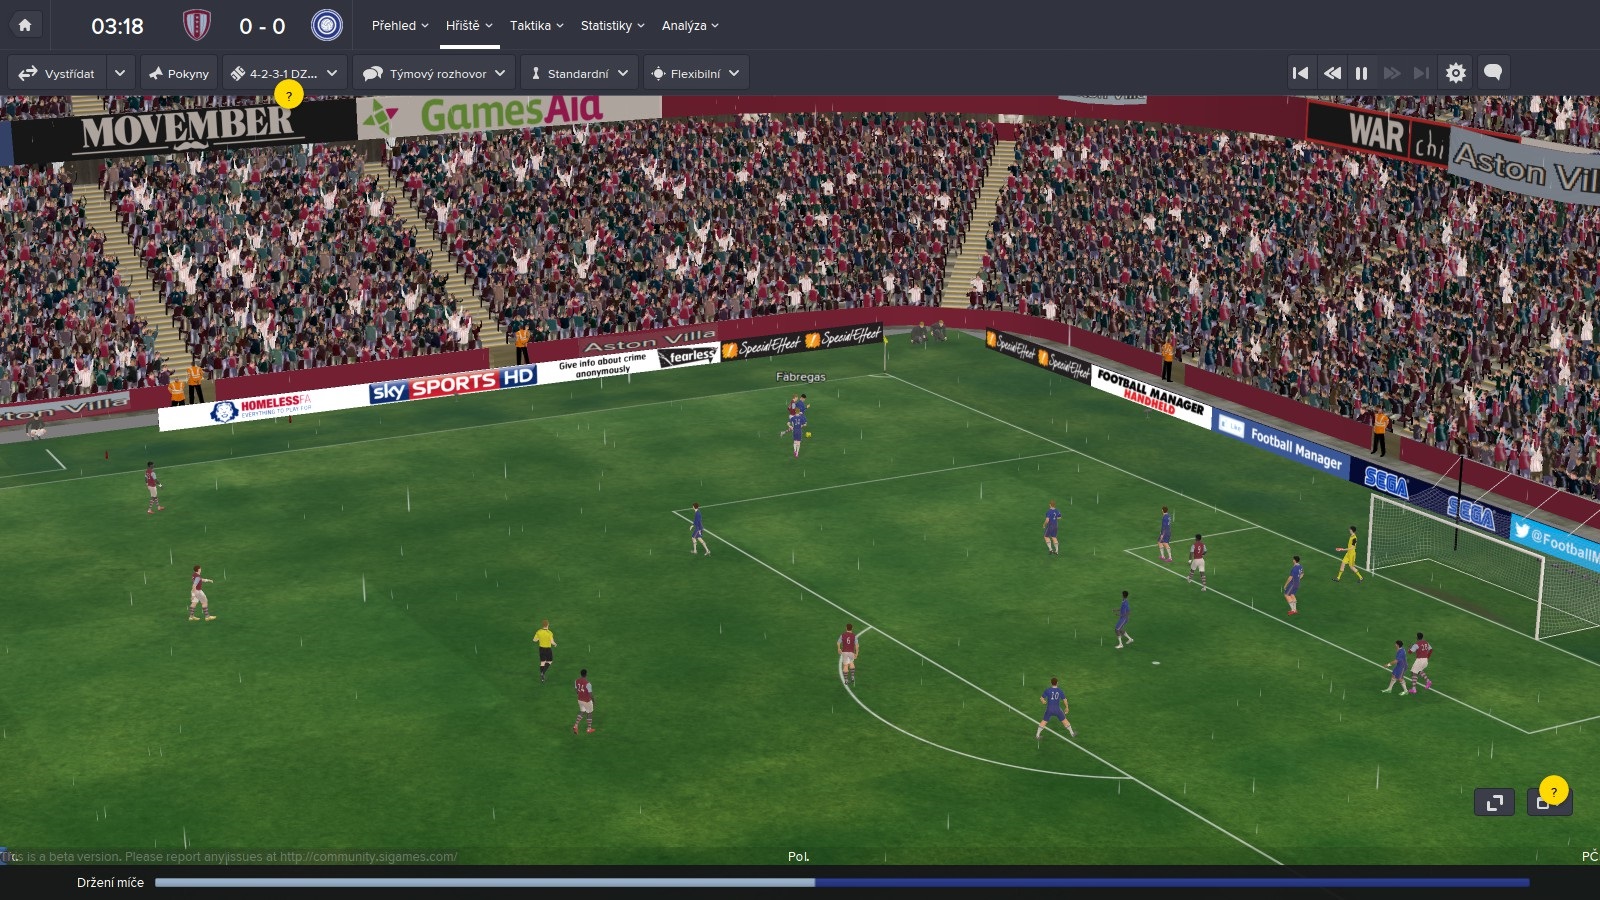 Football Manager 2015 Hra sa stala menej variabilnou a stavia na toky po krdlach.